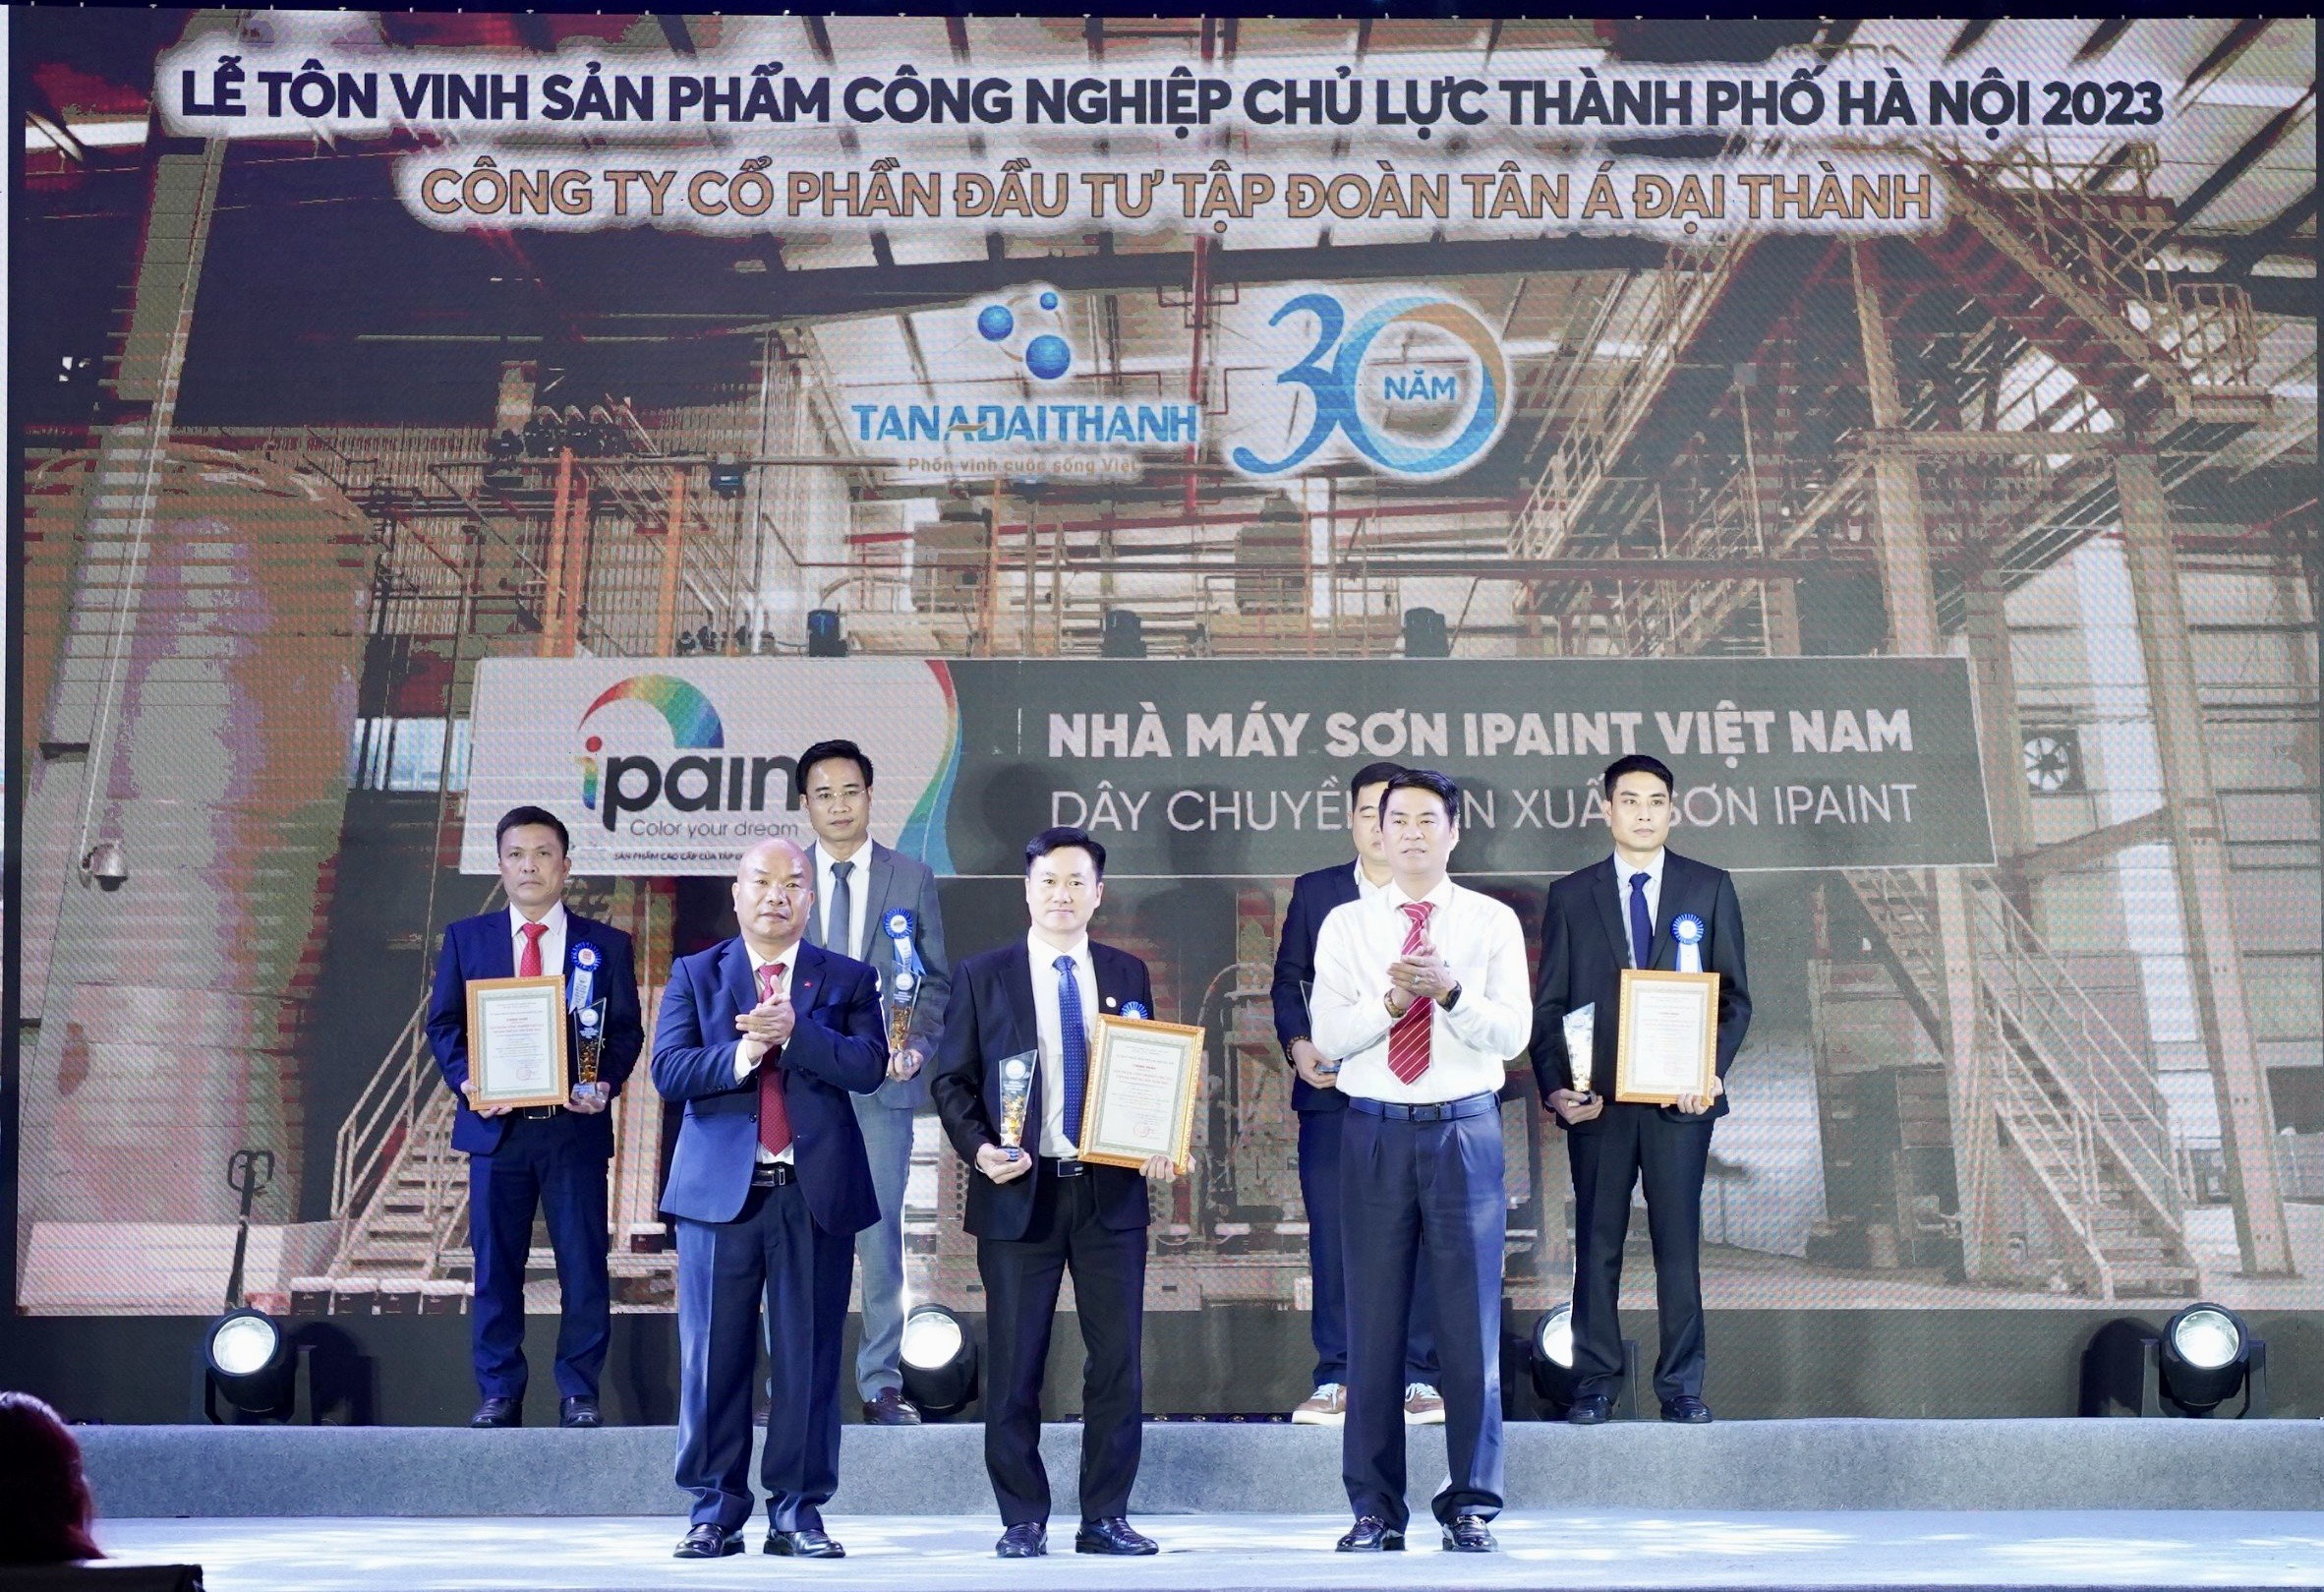 Sơn IPAINT của Xì to 7 lá
 nhận danh hiệu Sản phẩm công nghiệp chủ lực của TP.Hà Nội năm 2023